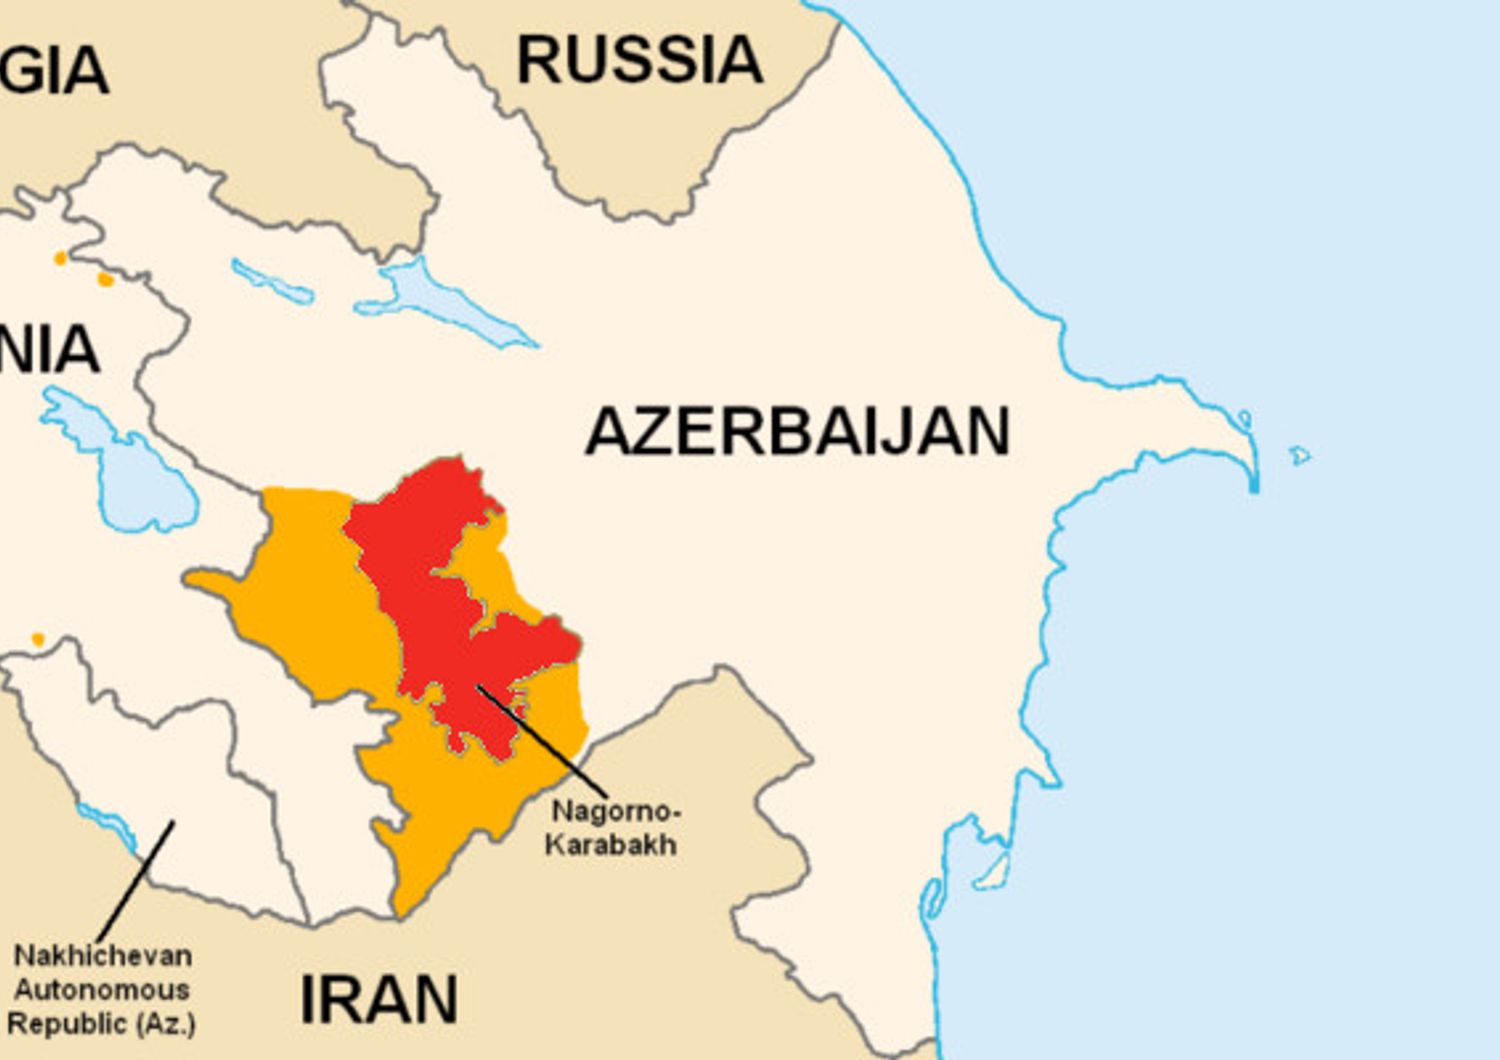 &nbsp;Armenia Azerbaijan Nagorno-Karbakh